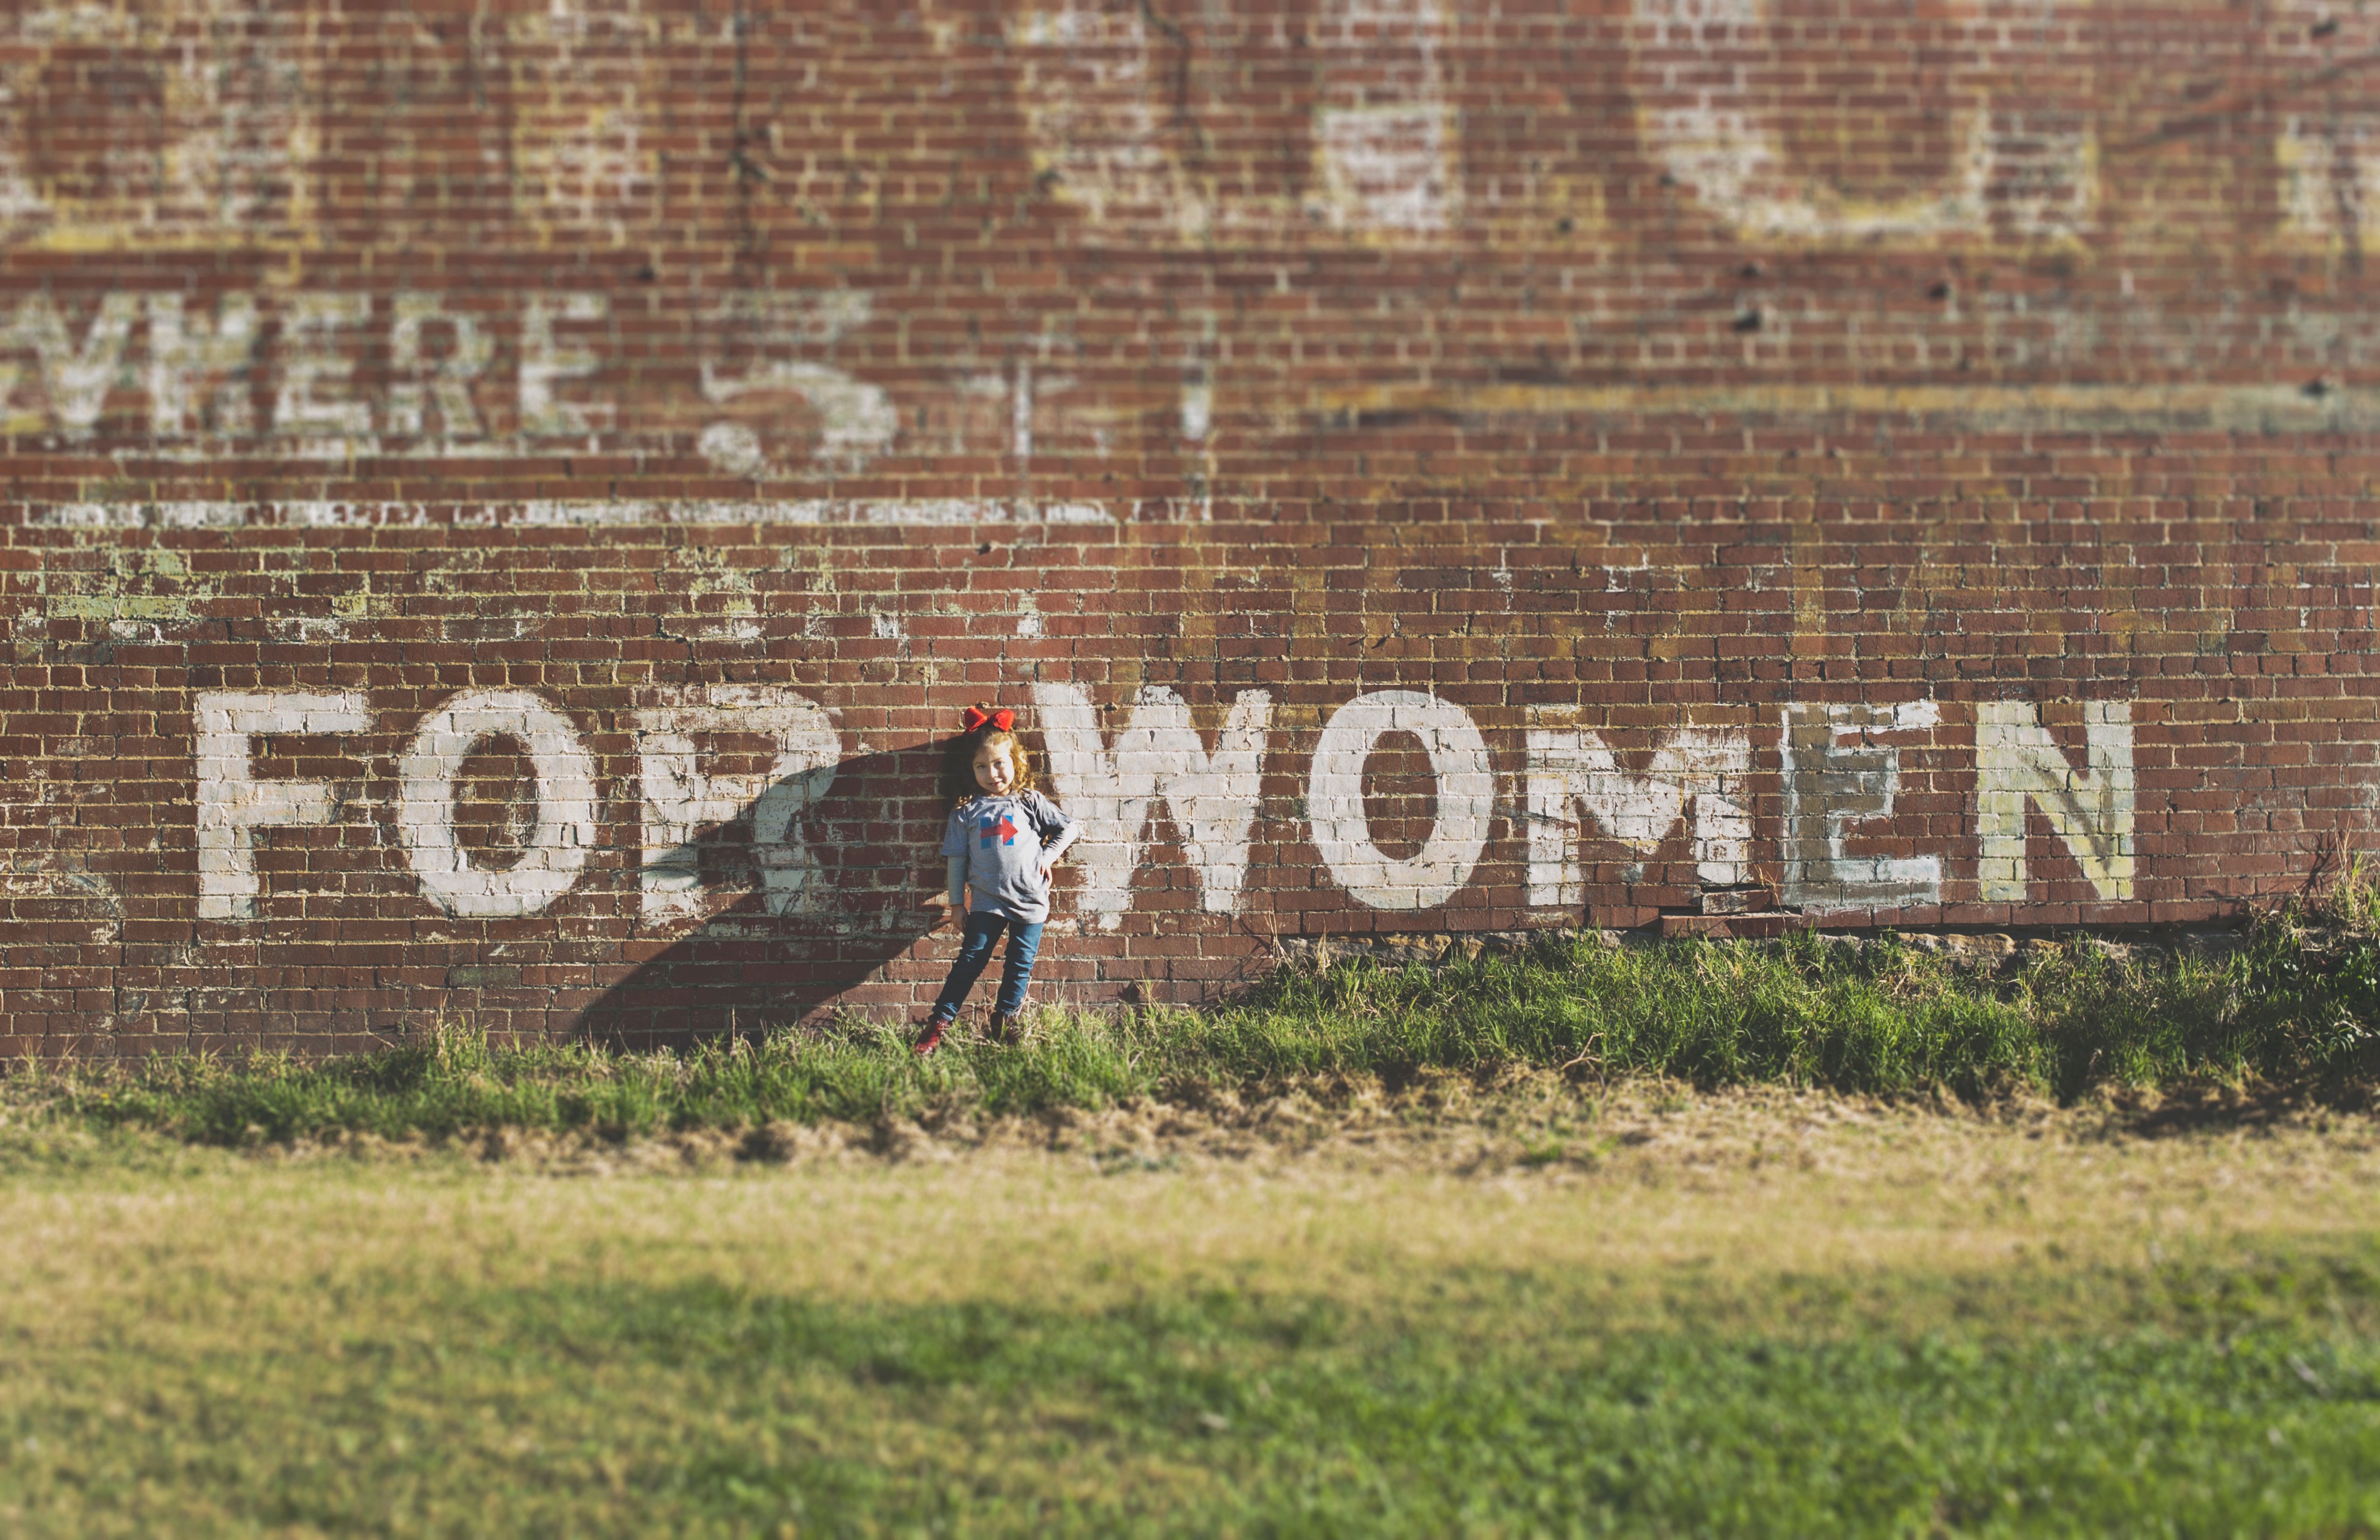 For woman. Mit weißer Farbe auf eine Backsteinmauer geschrieben